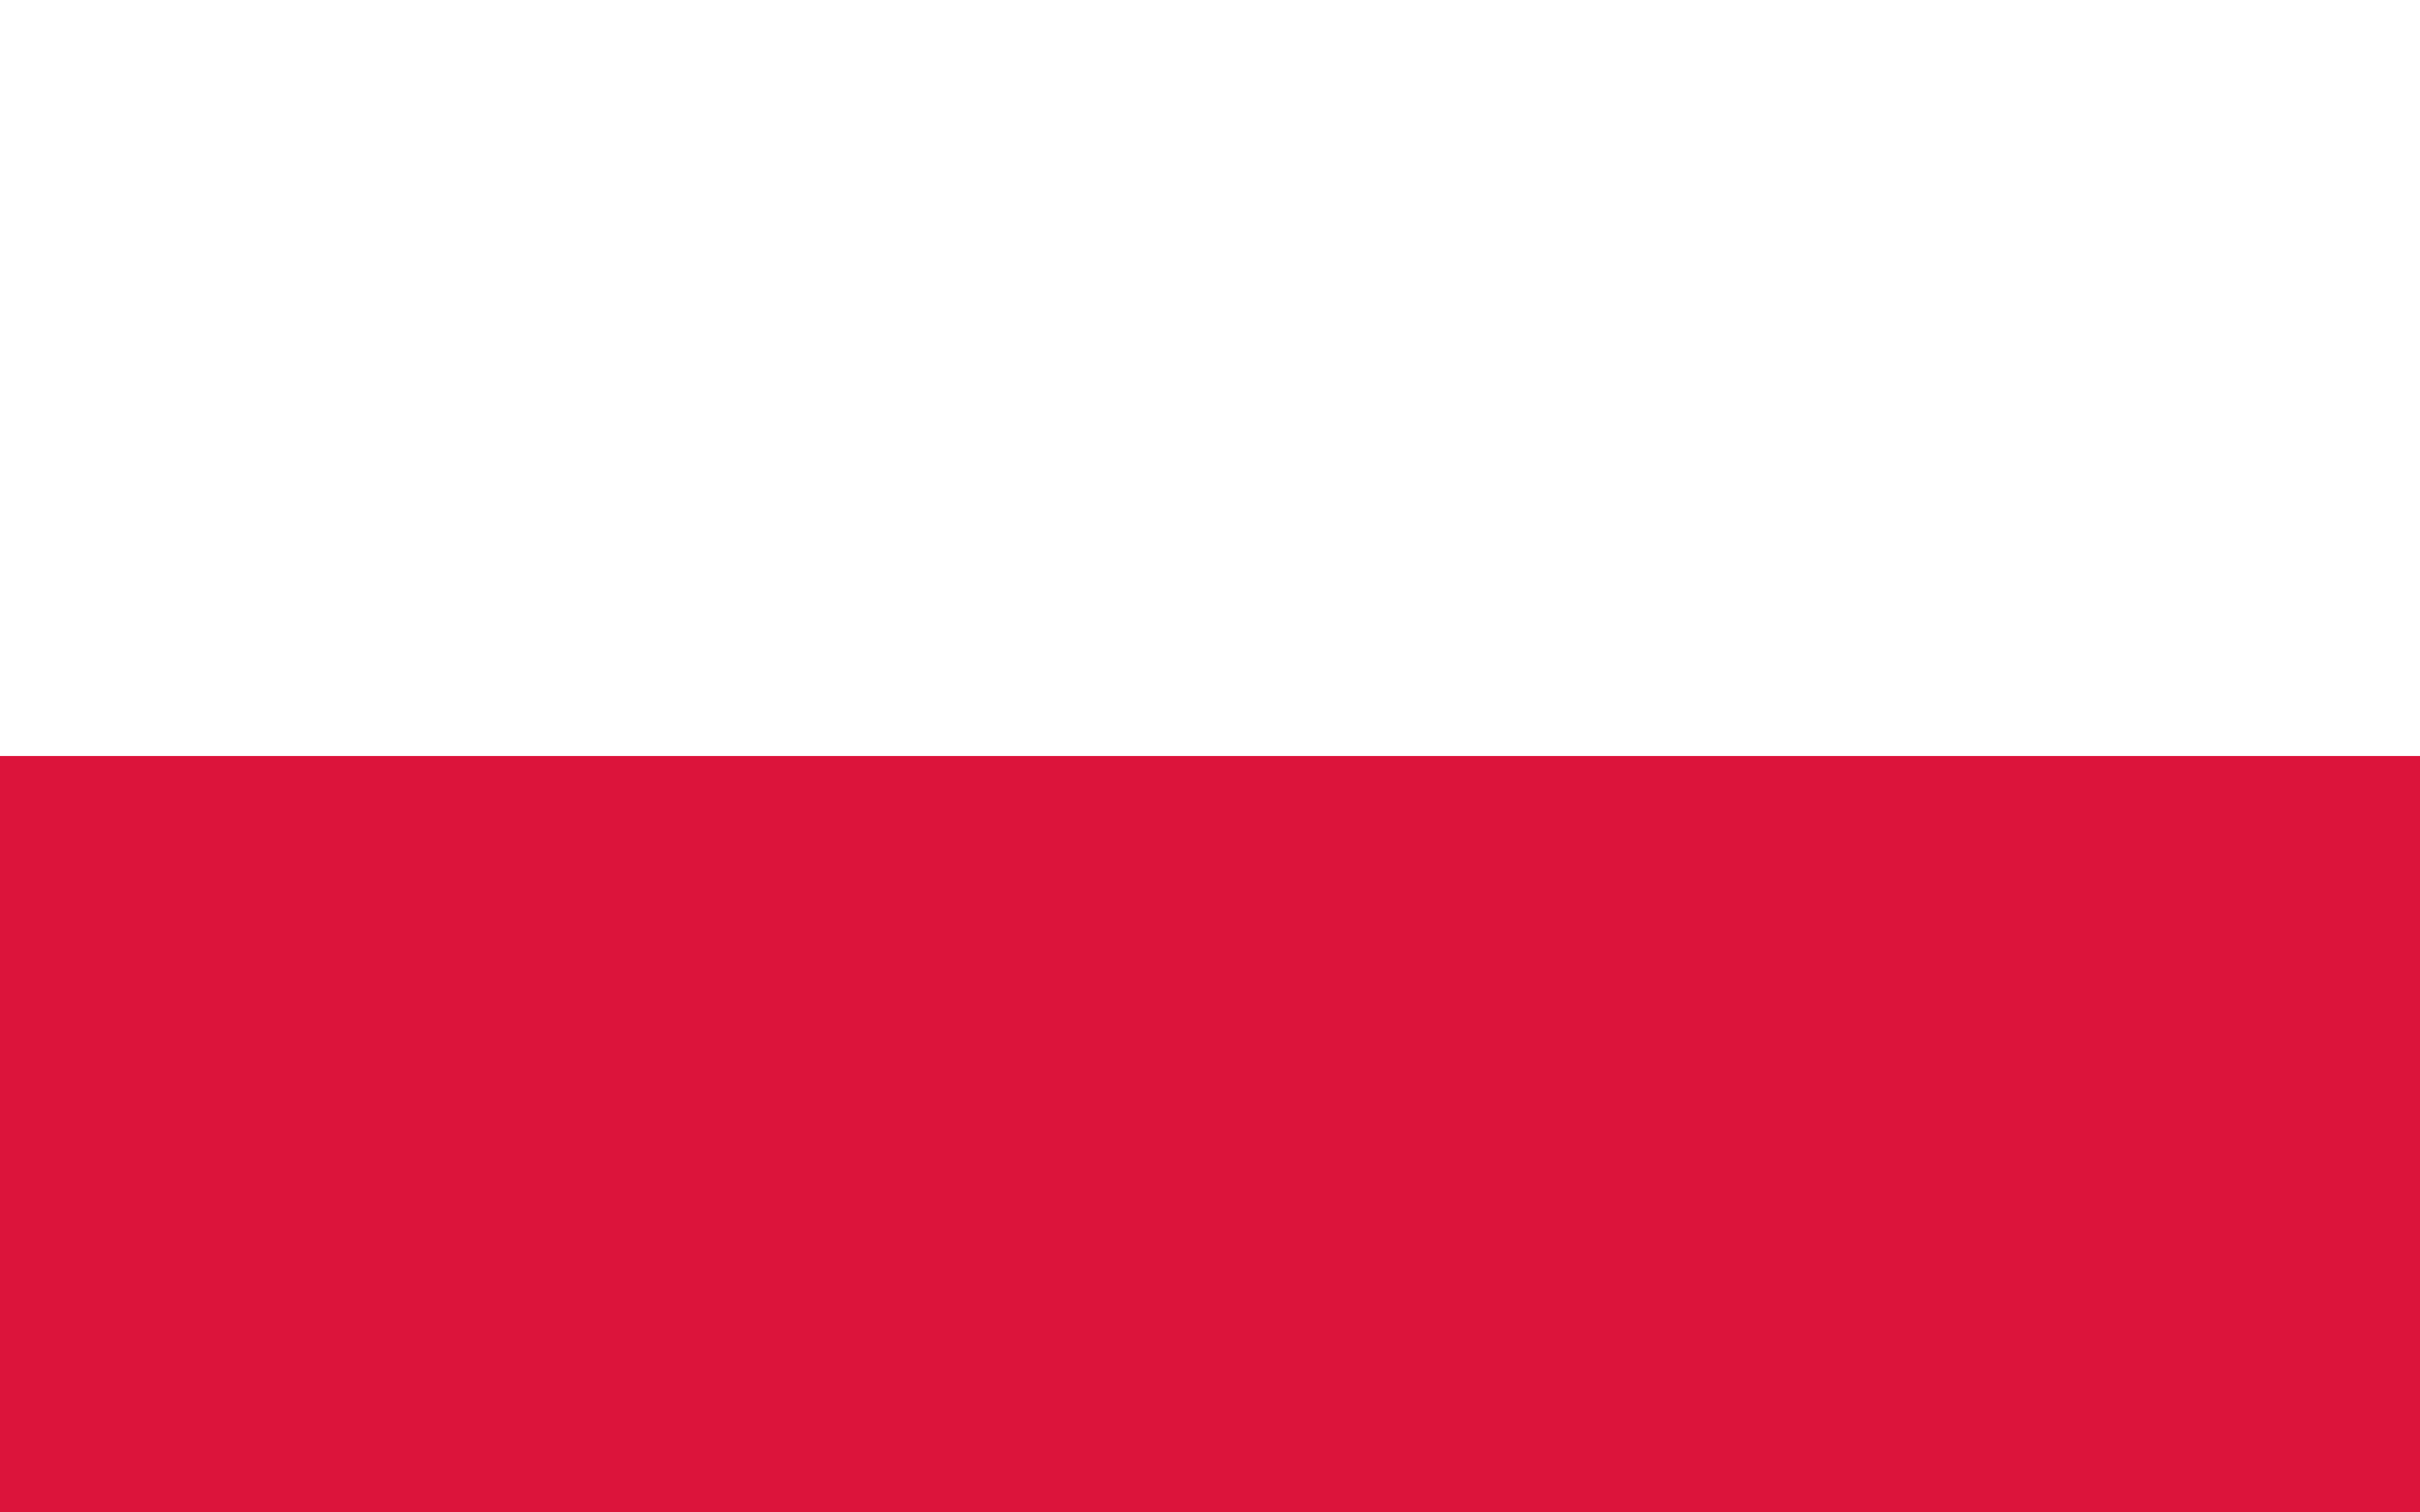 Printable Polish Flag Printable Word Searches